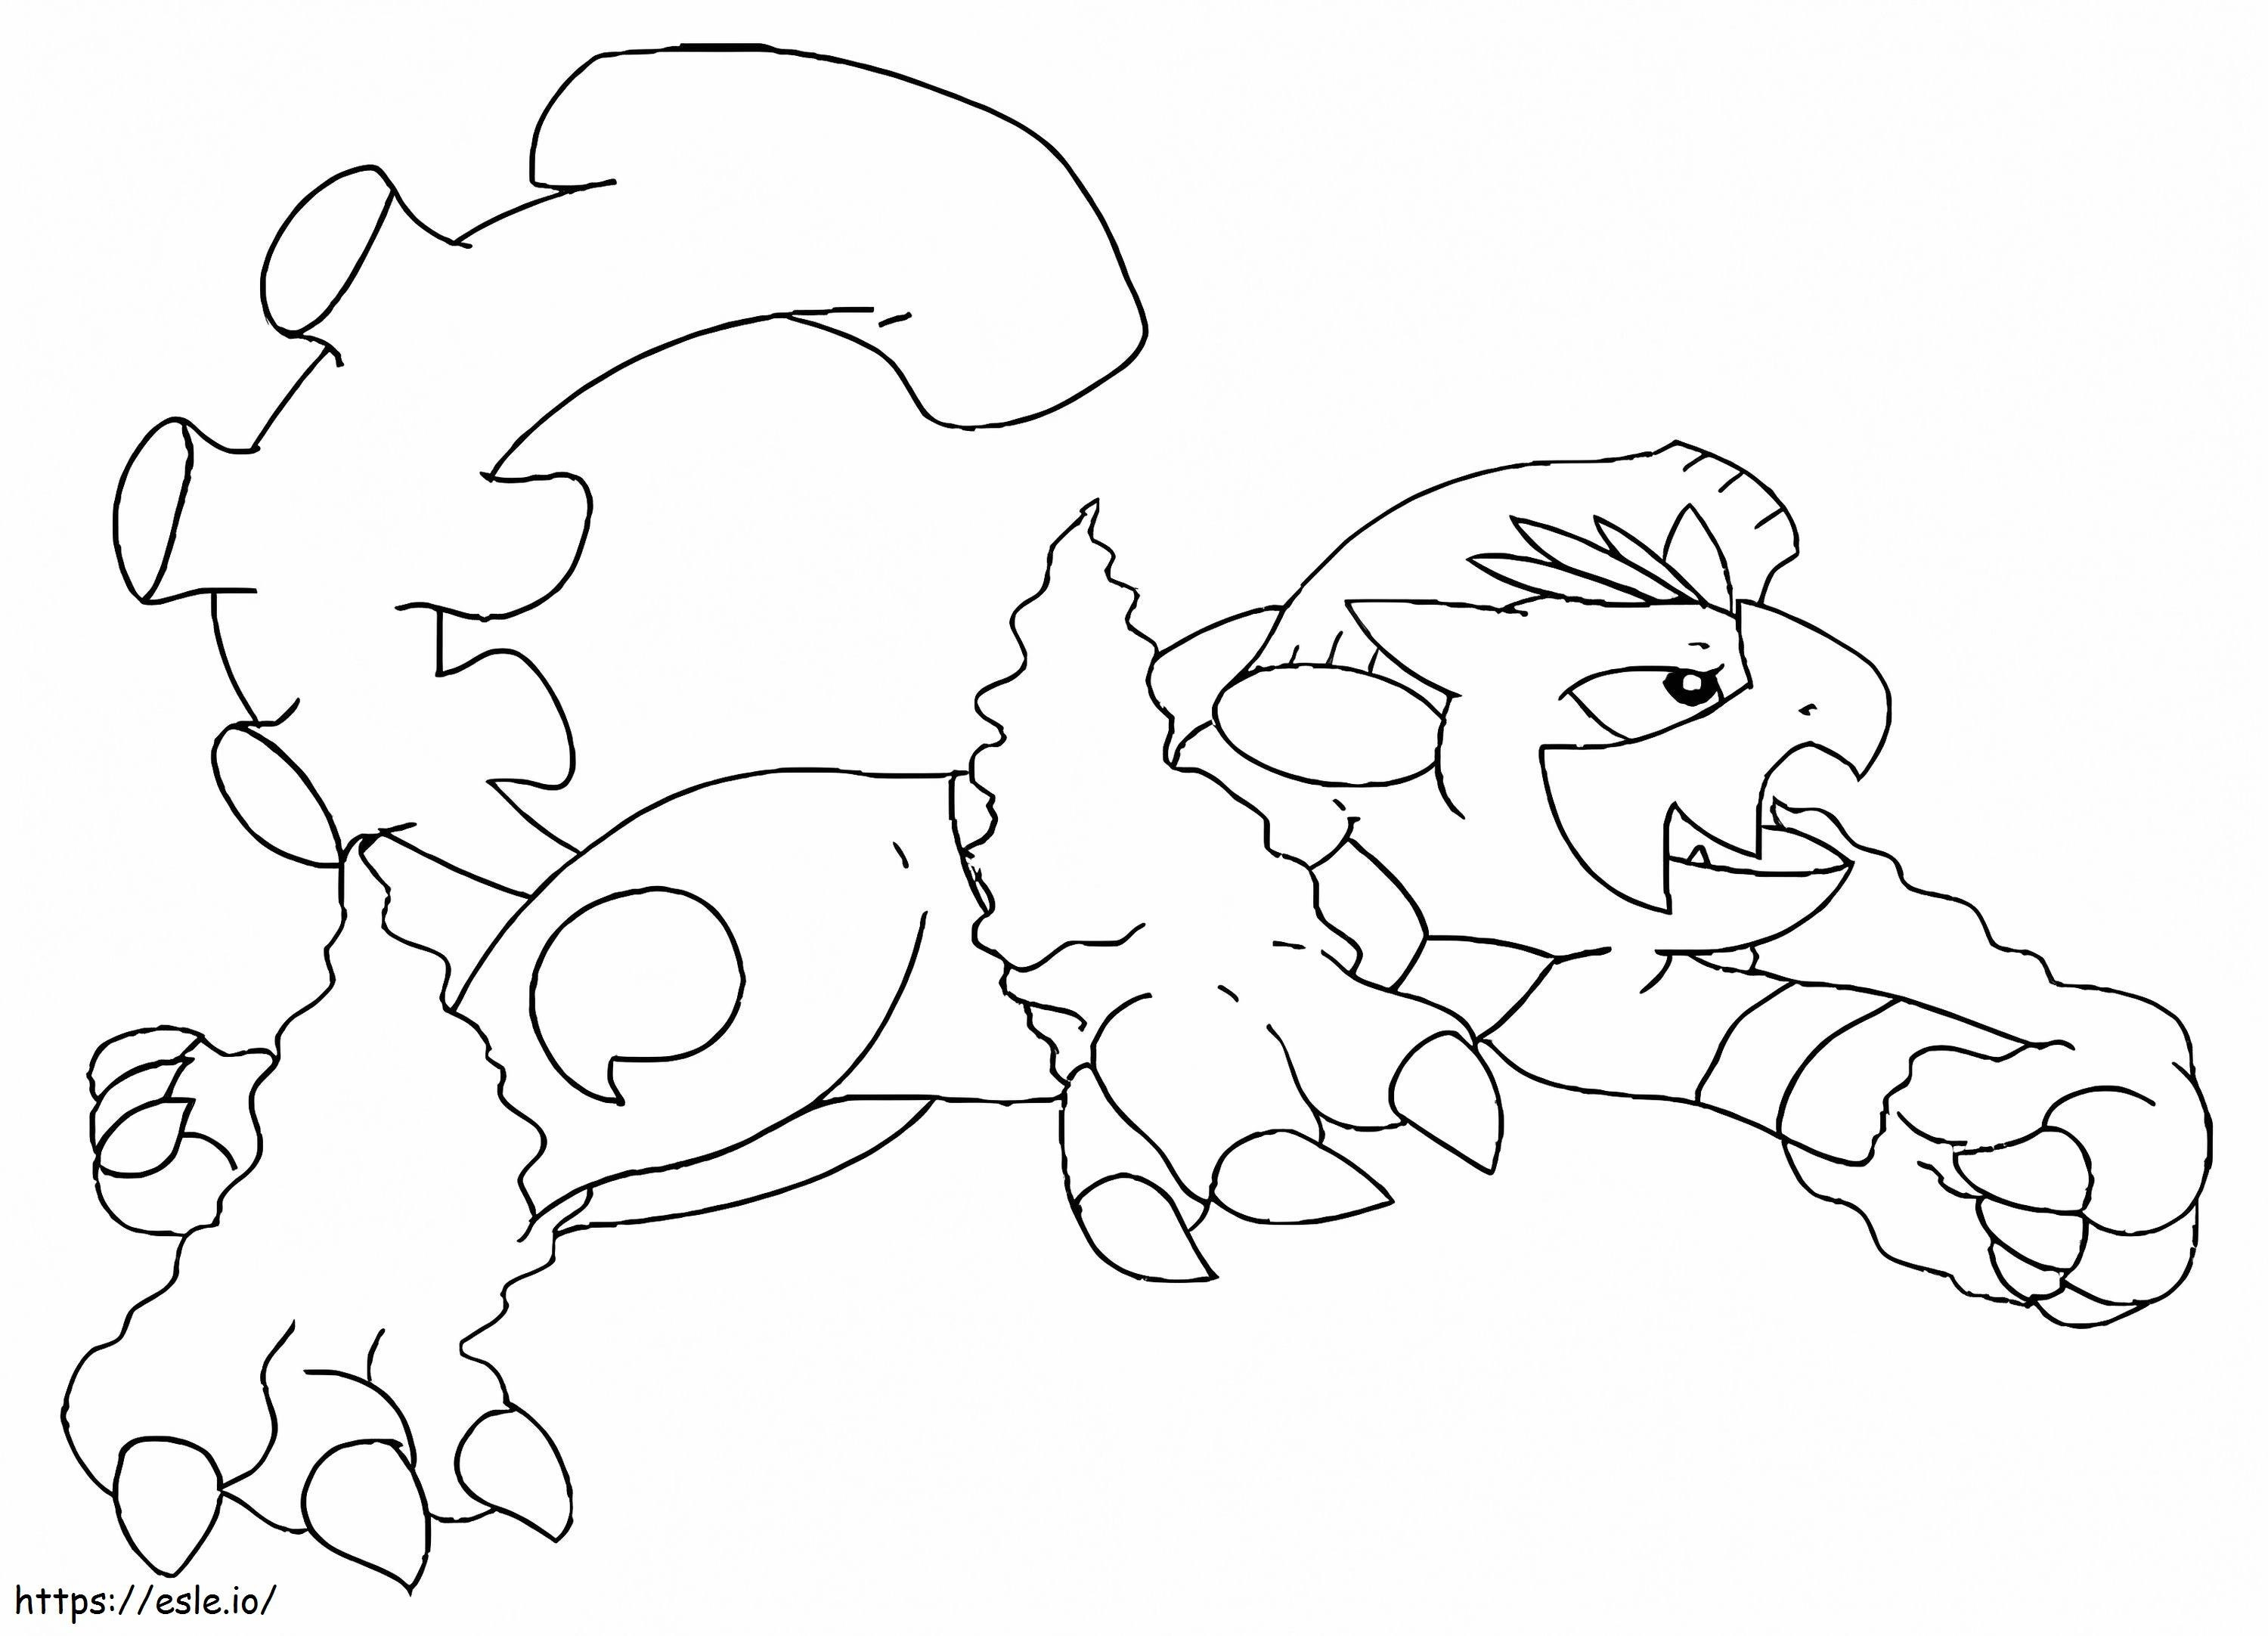 Coloriage Pokémon Landorus 2 à imprimer dessin